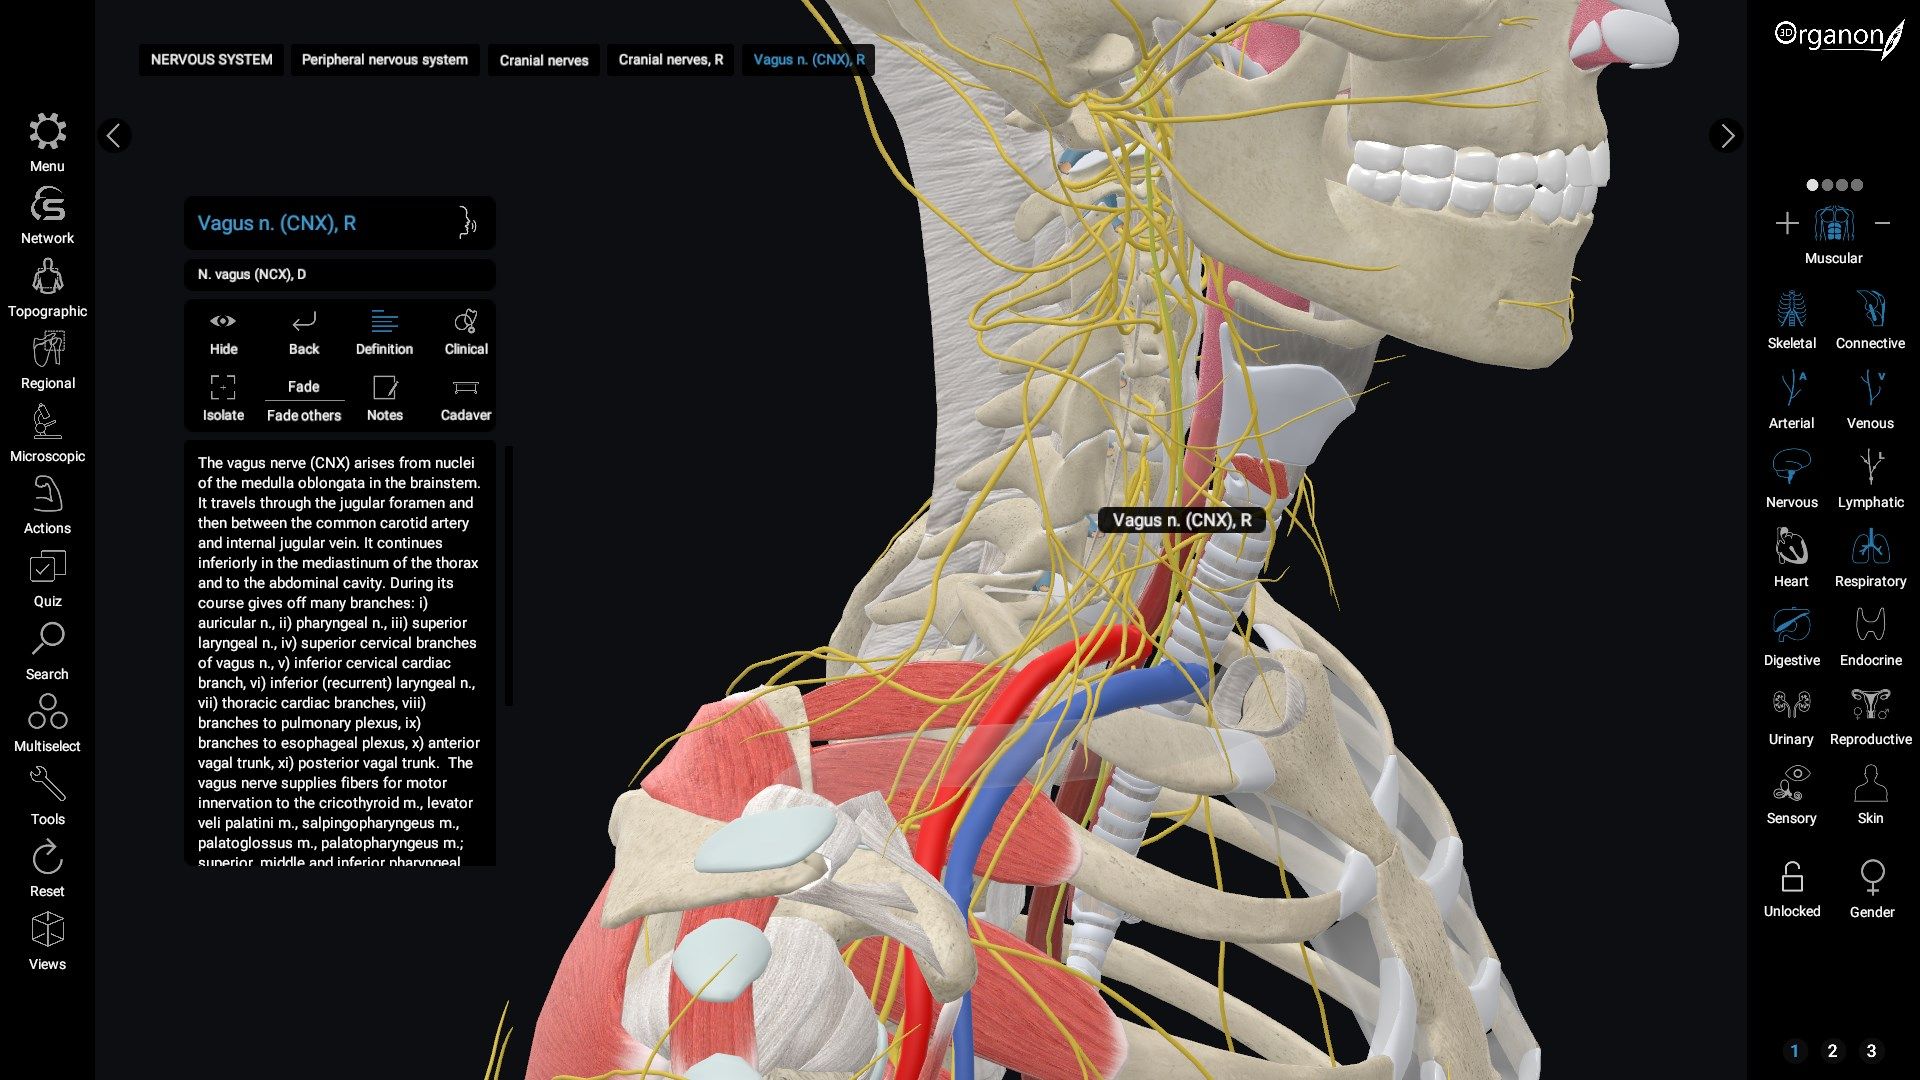 3D Organon Anatomy - Enterprise Edition